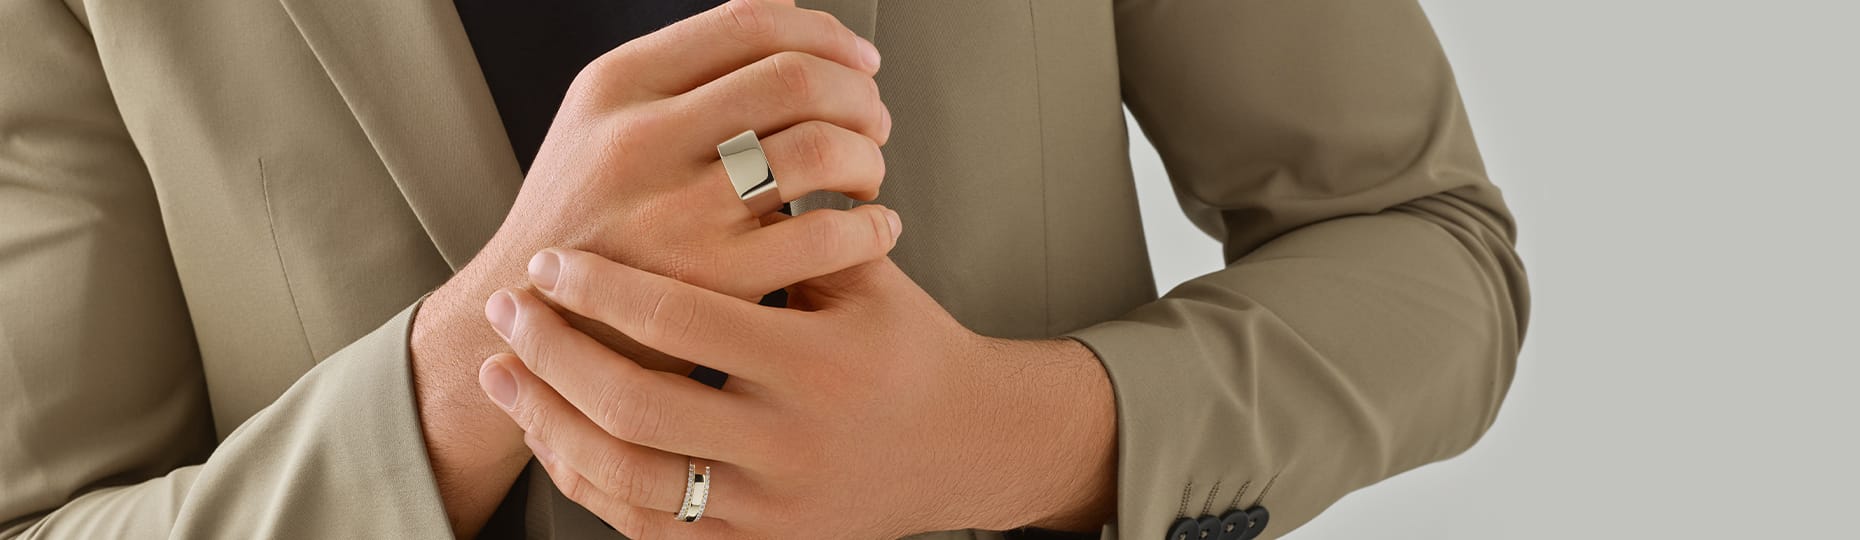 man wearing rings in both hands